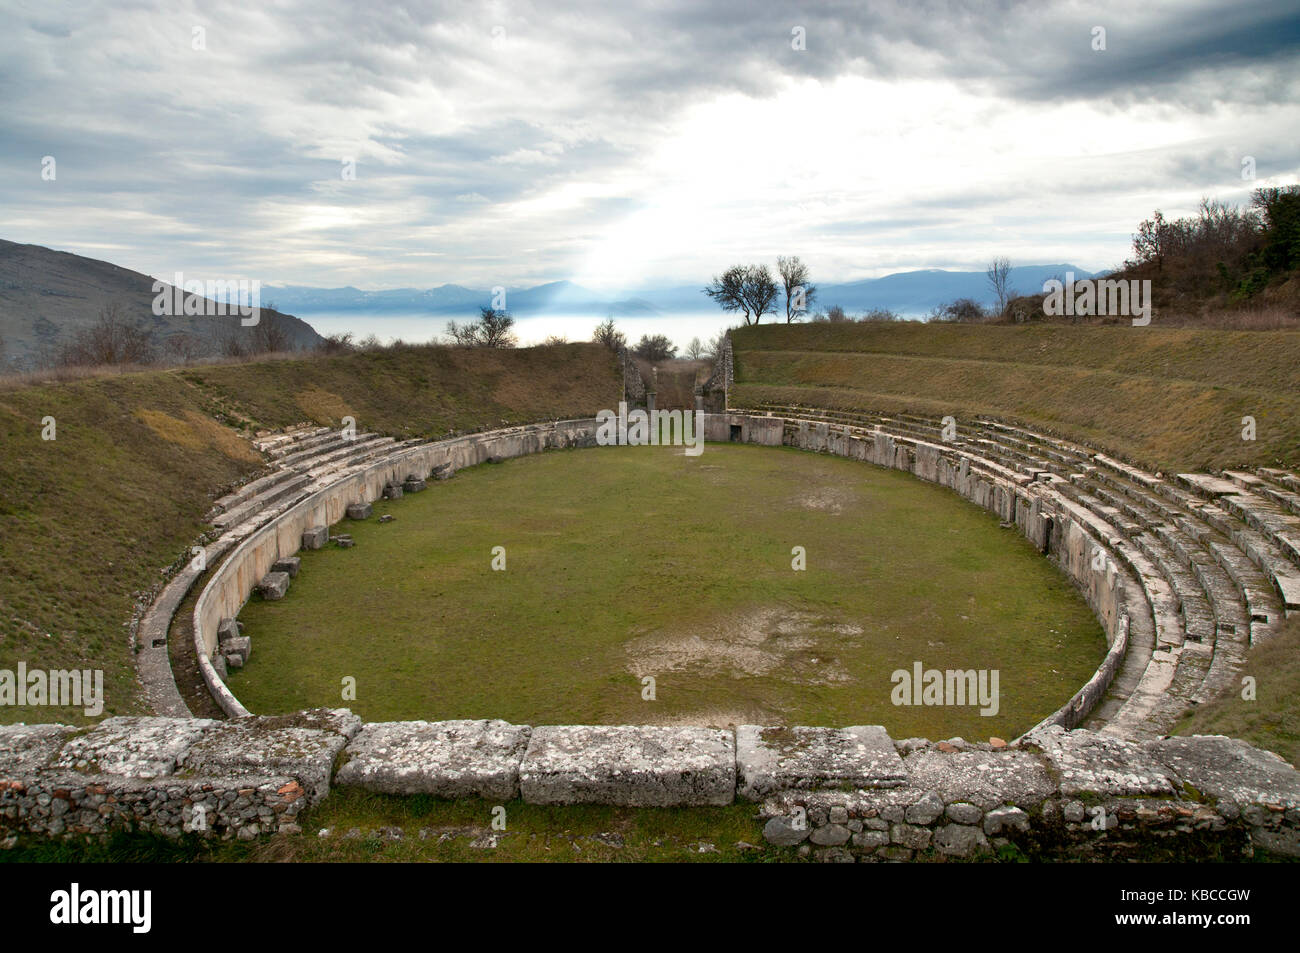 Blickt man auf das antike römische Amphitheater in Alba Fucens, Italien, dating in der ersten Hälfte des ersten Jahrhunderts, mit fucino Plateau im Hintergrund Stockfoto